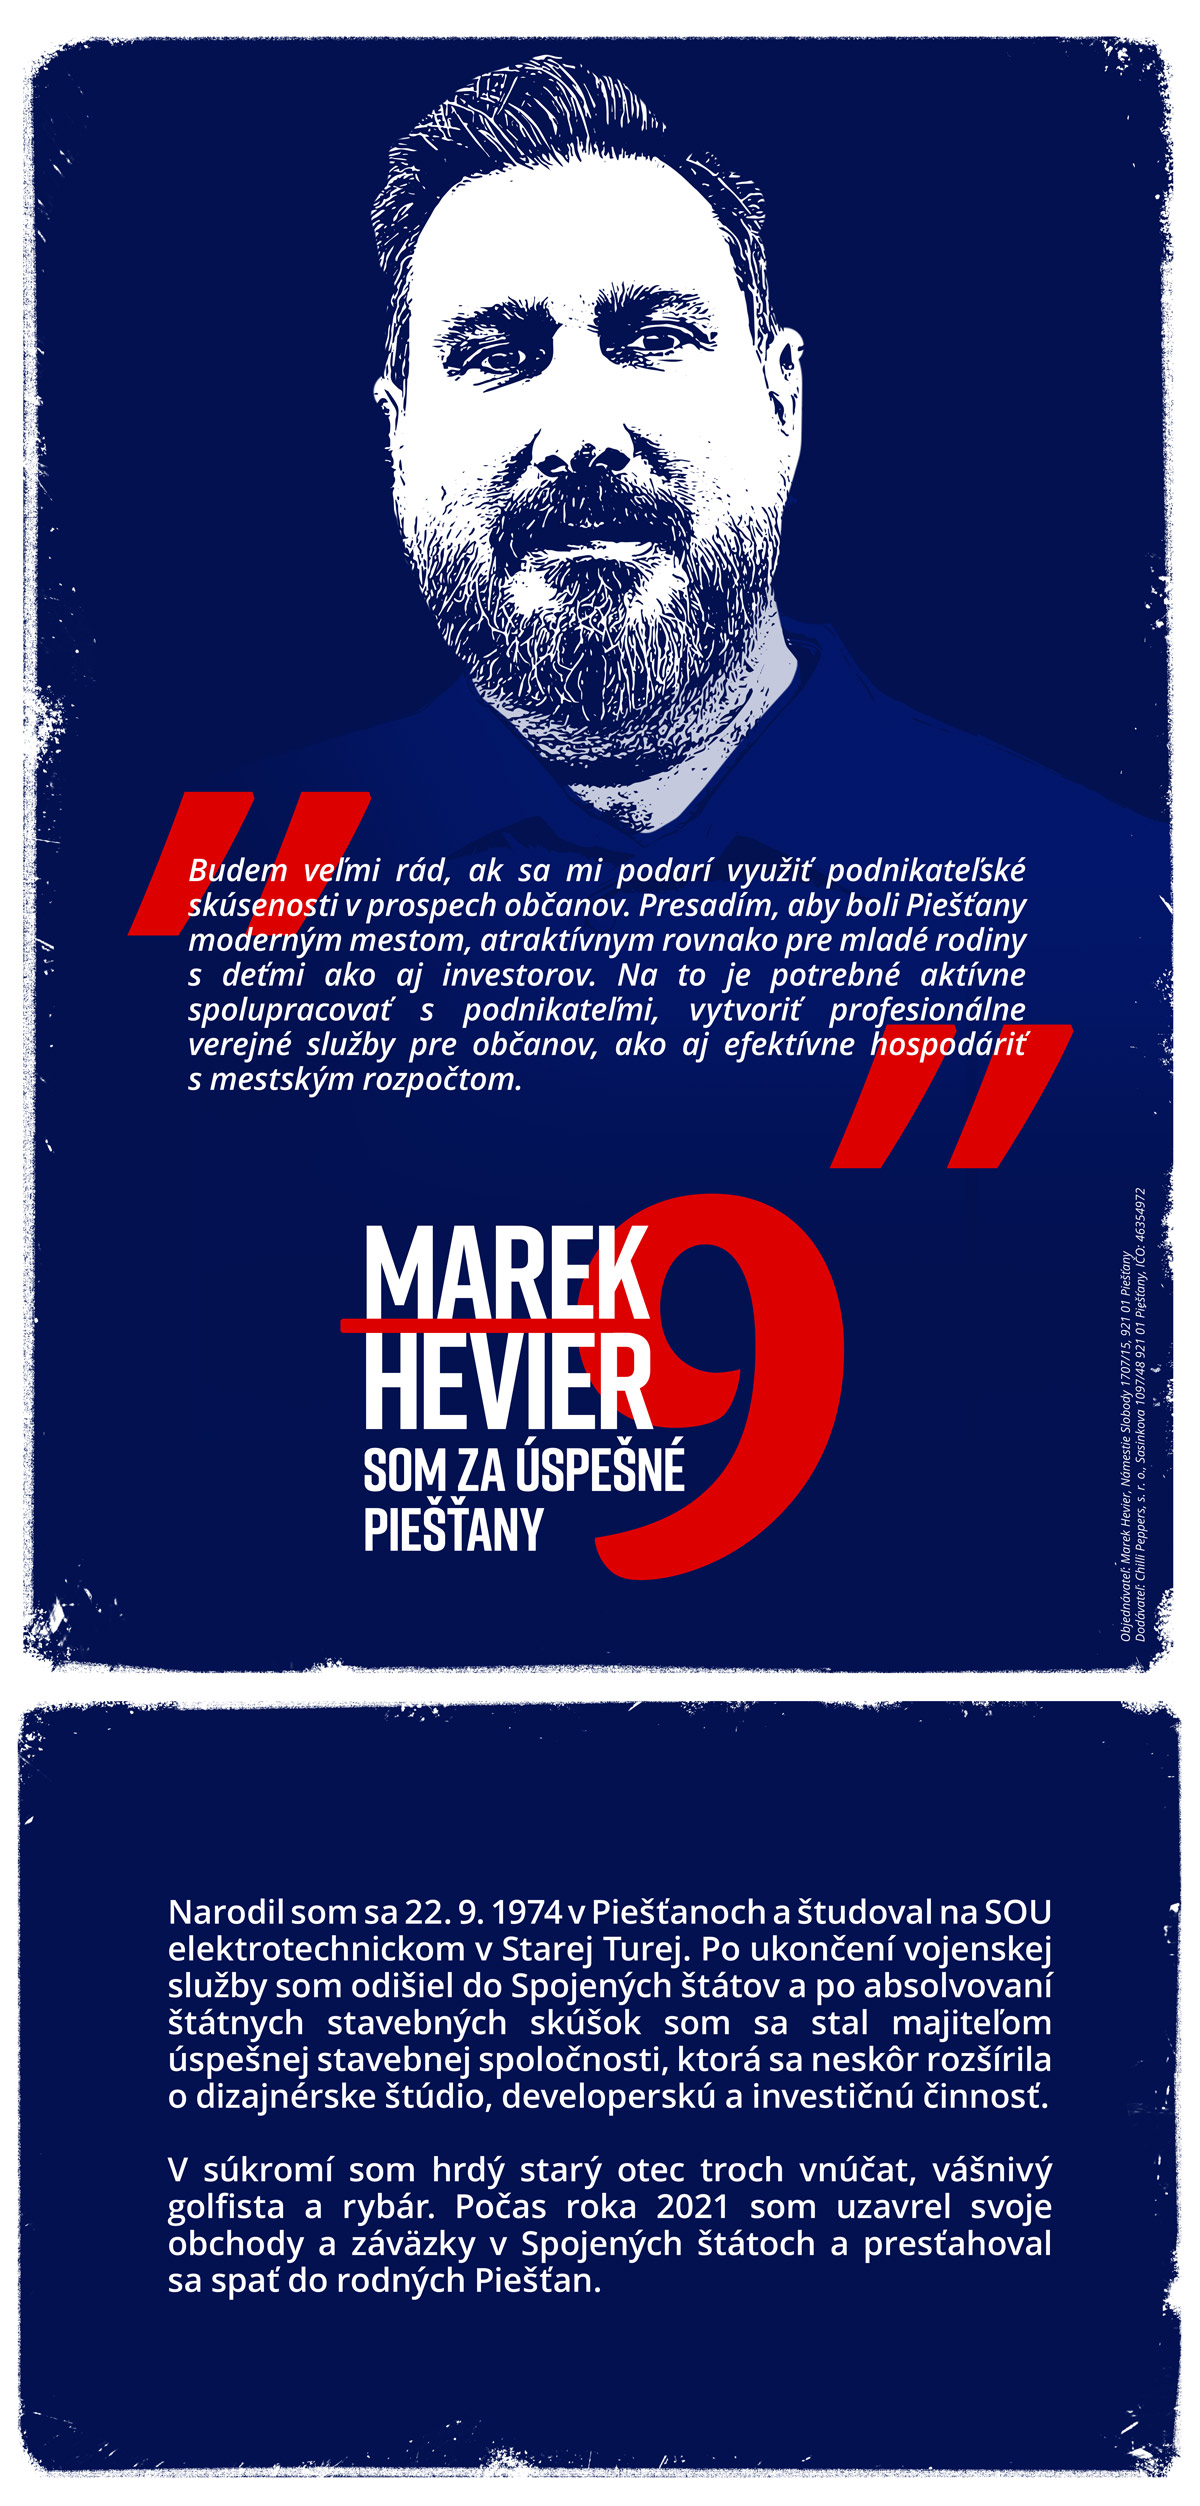 Marek Hevier